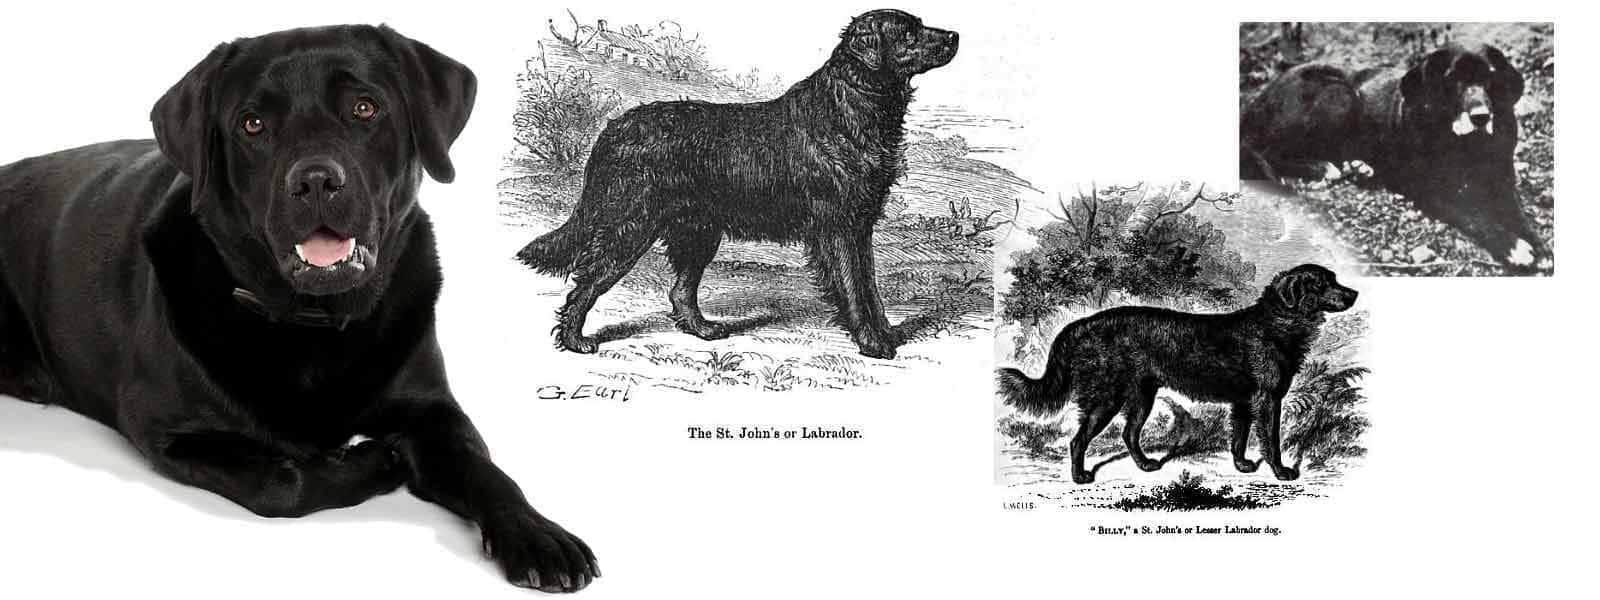 Did You Know...Labrador Retrievers Do Not Come From Labrador!